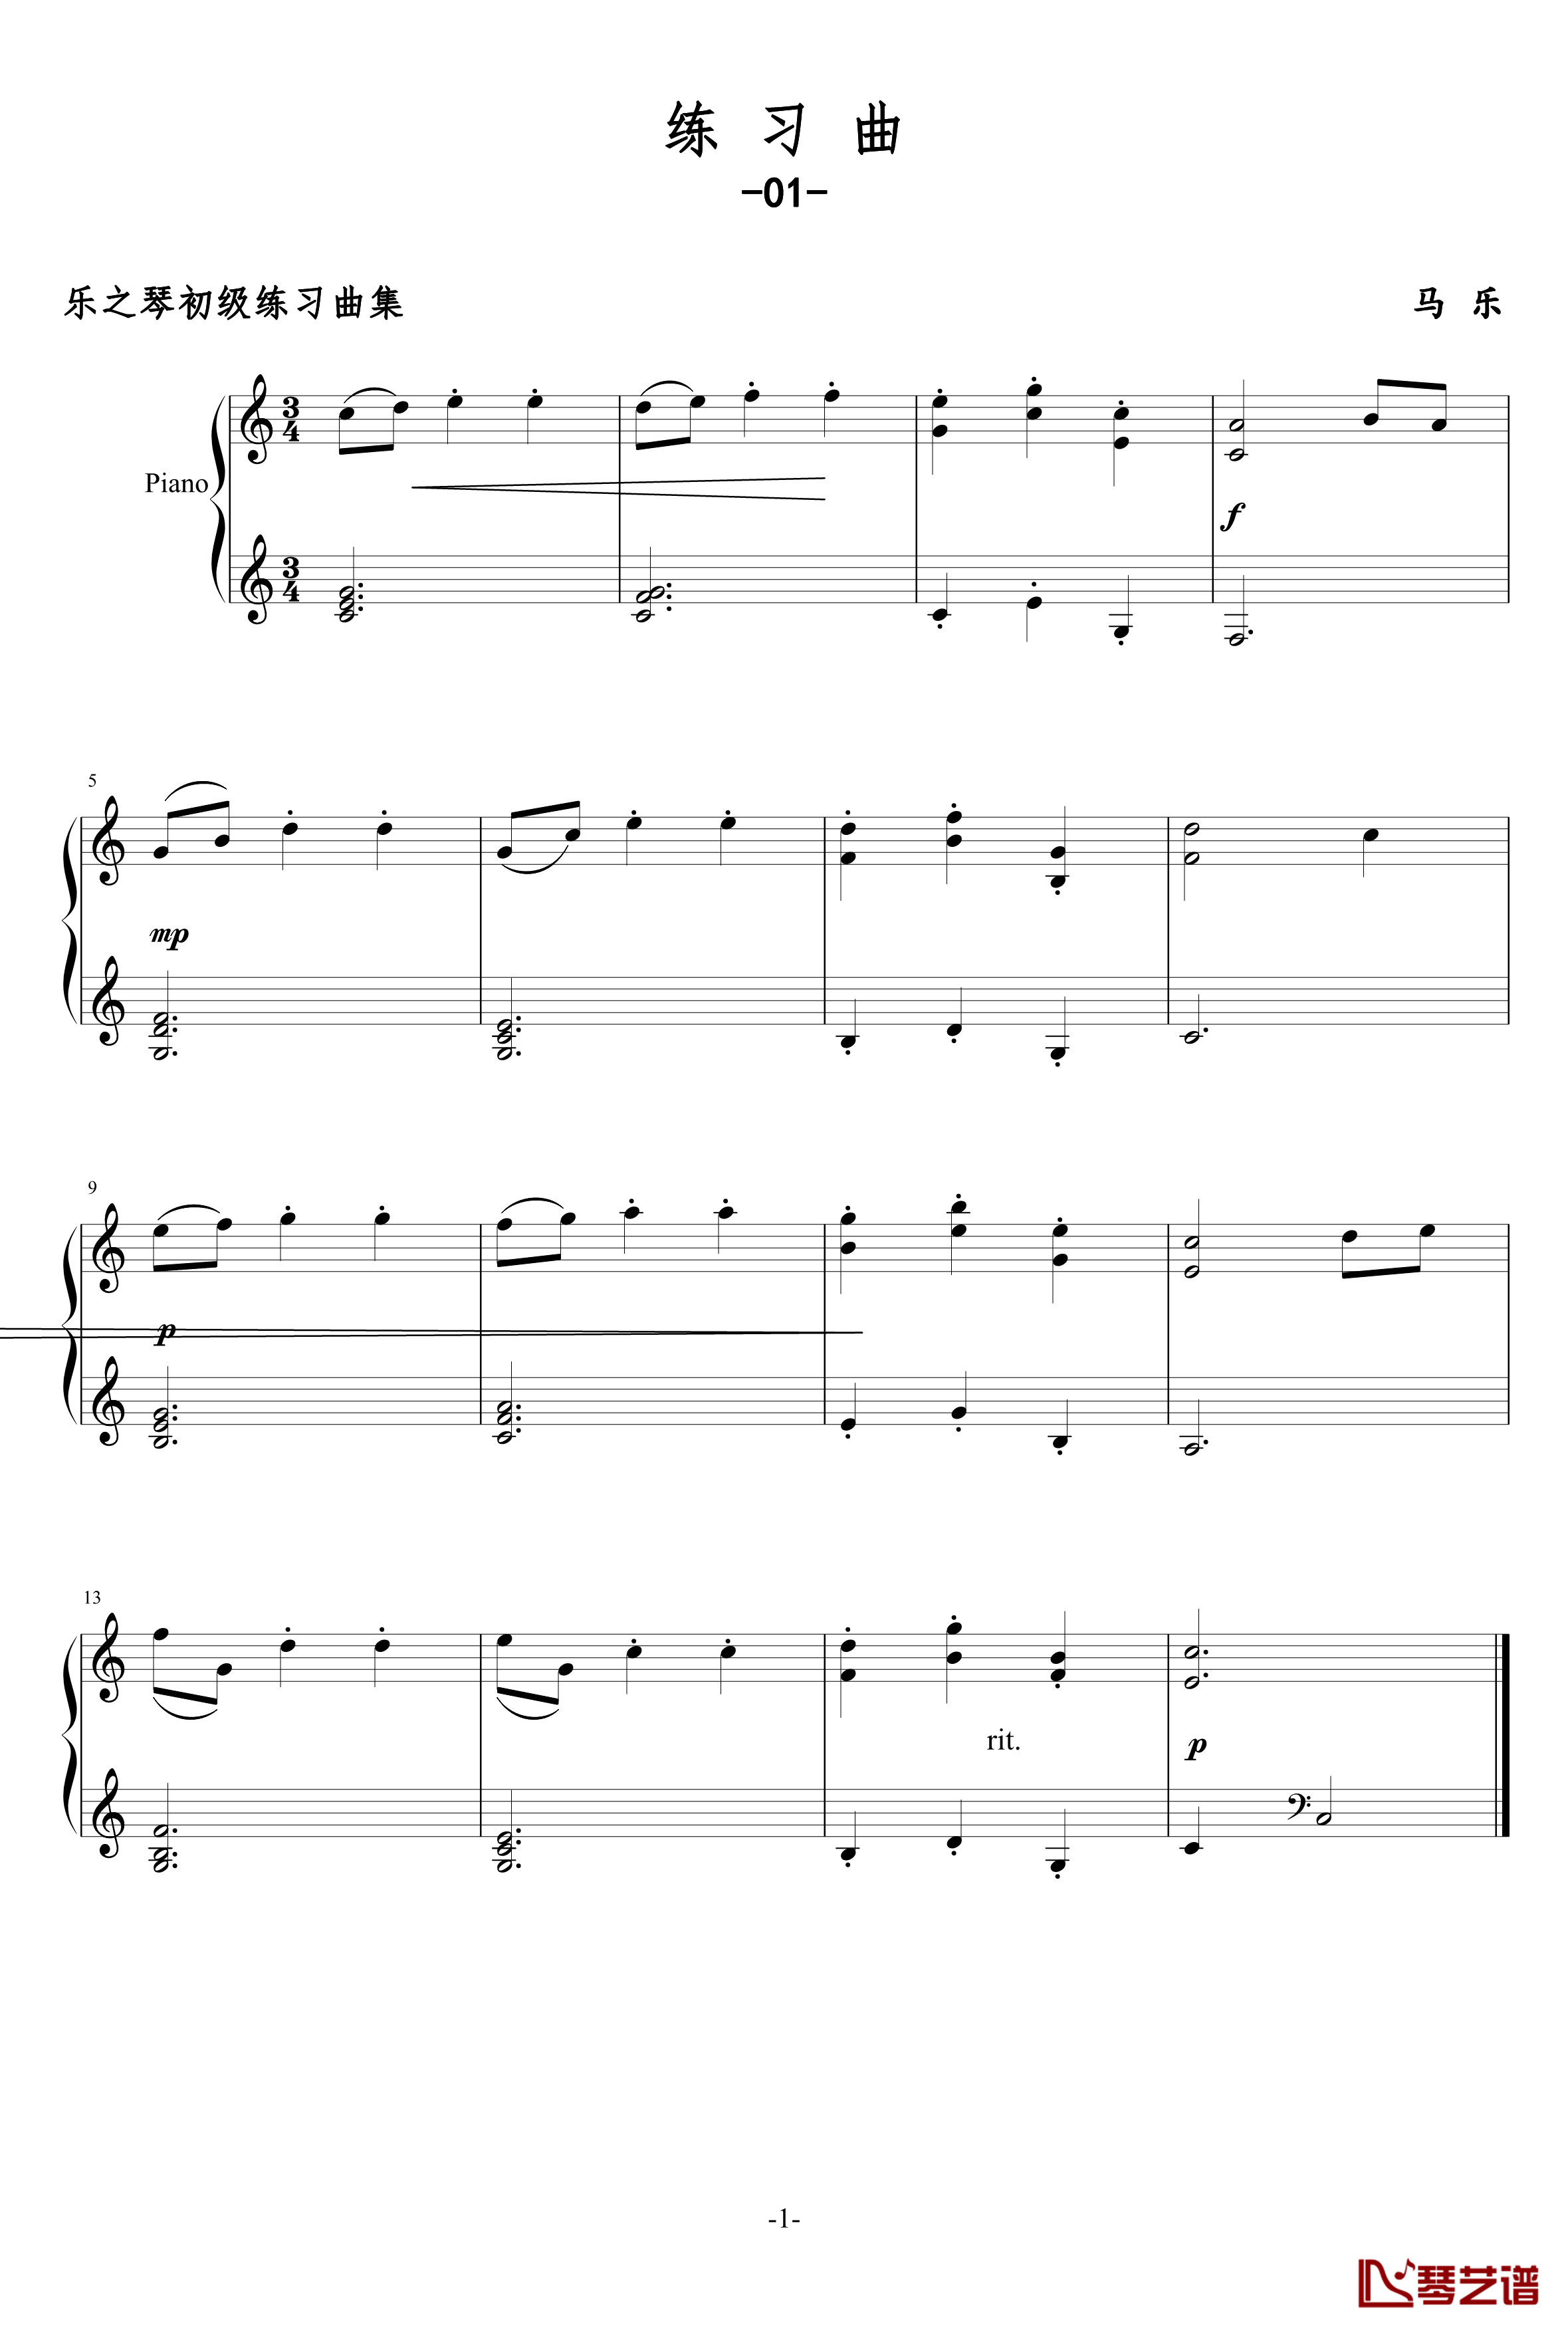 练习曲02钢琴谱-乐之琴1